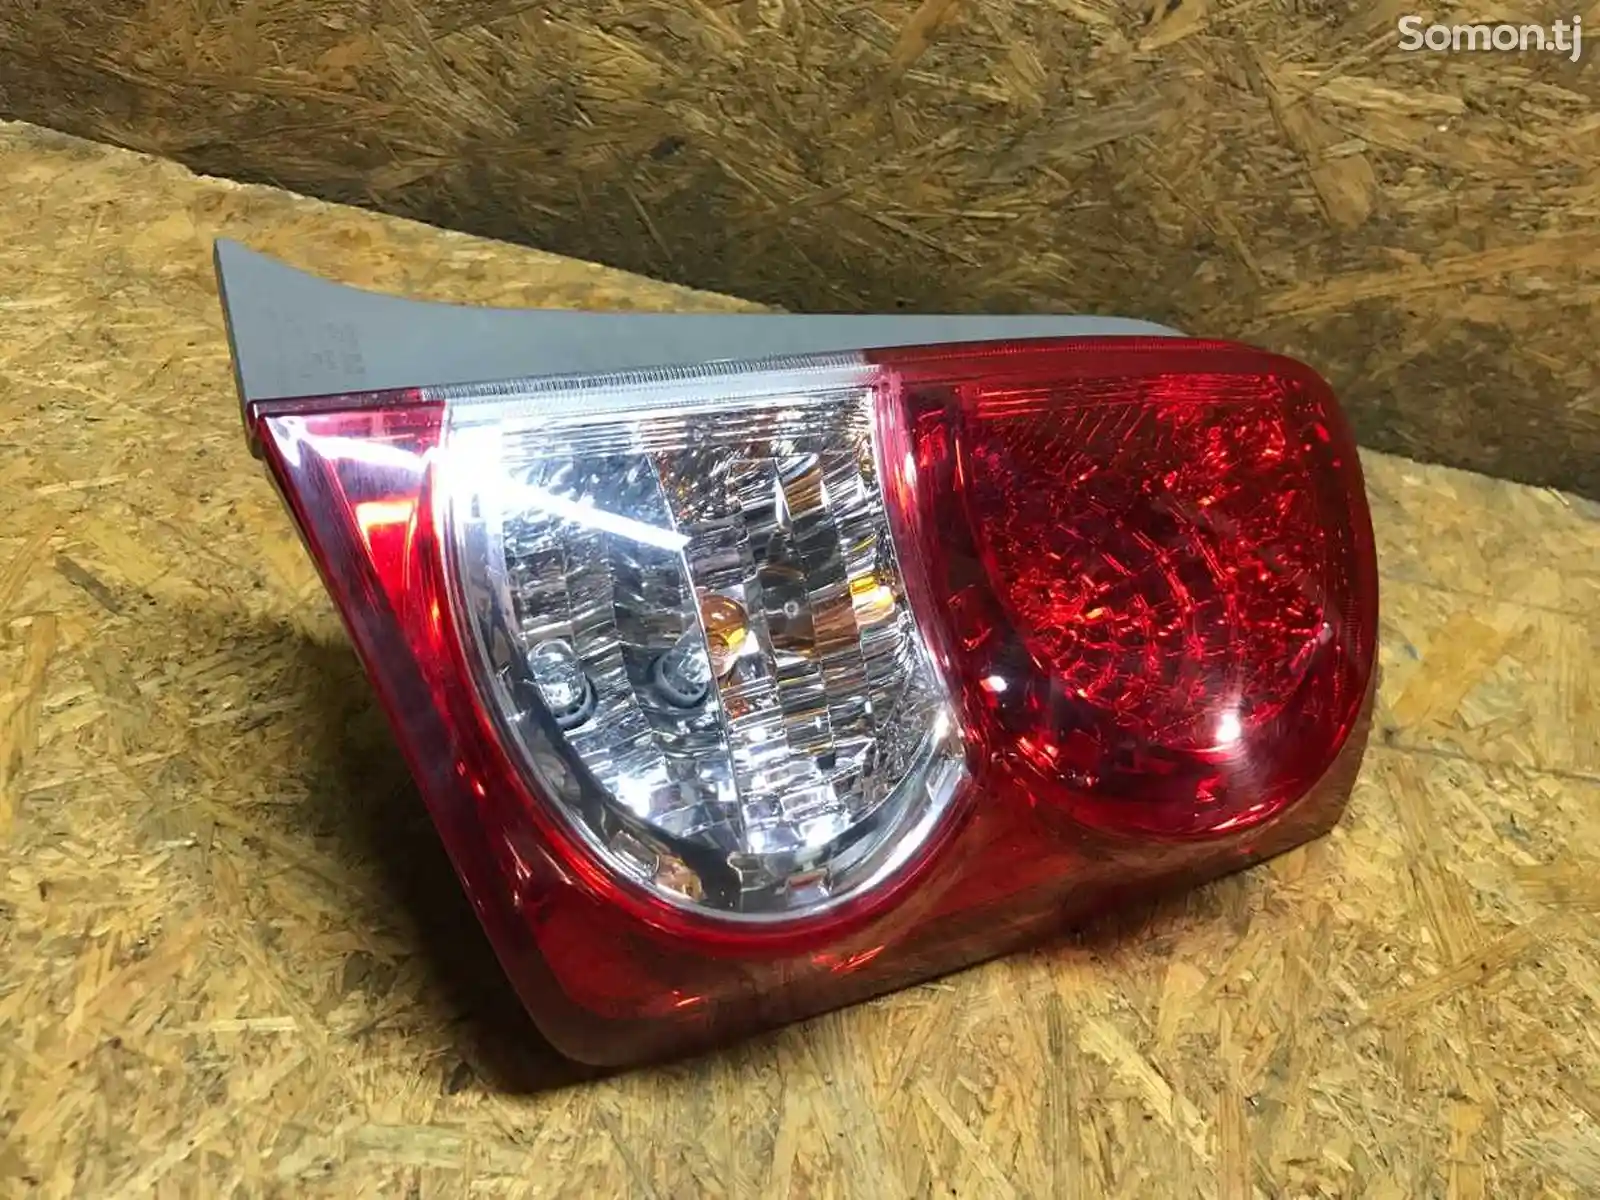 Задний правый фонарь на Toyota Rumion-12